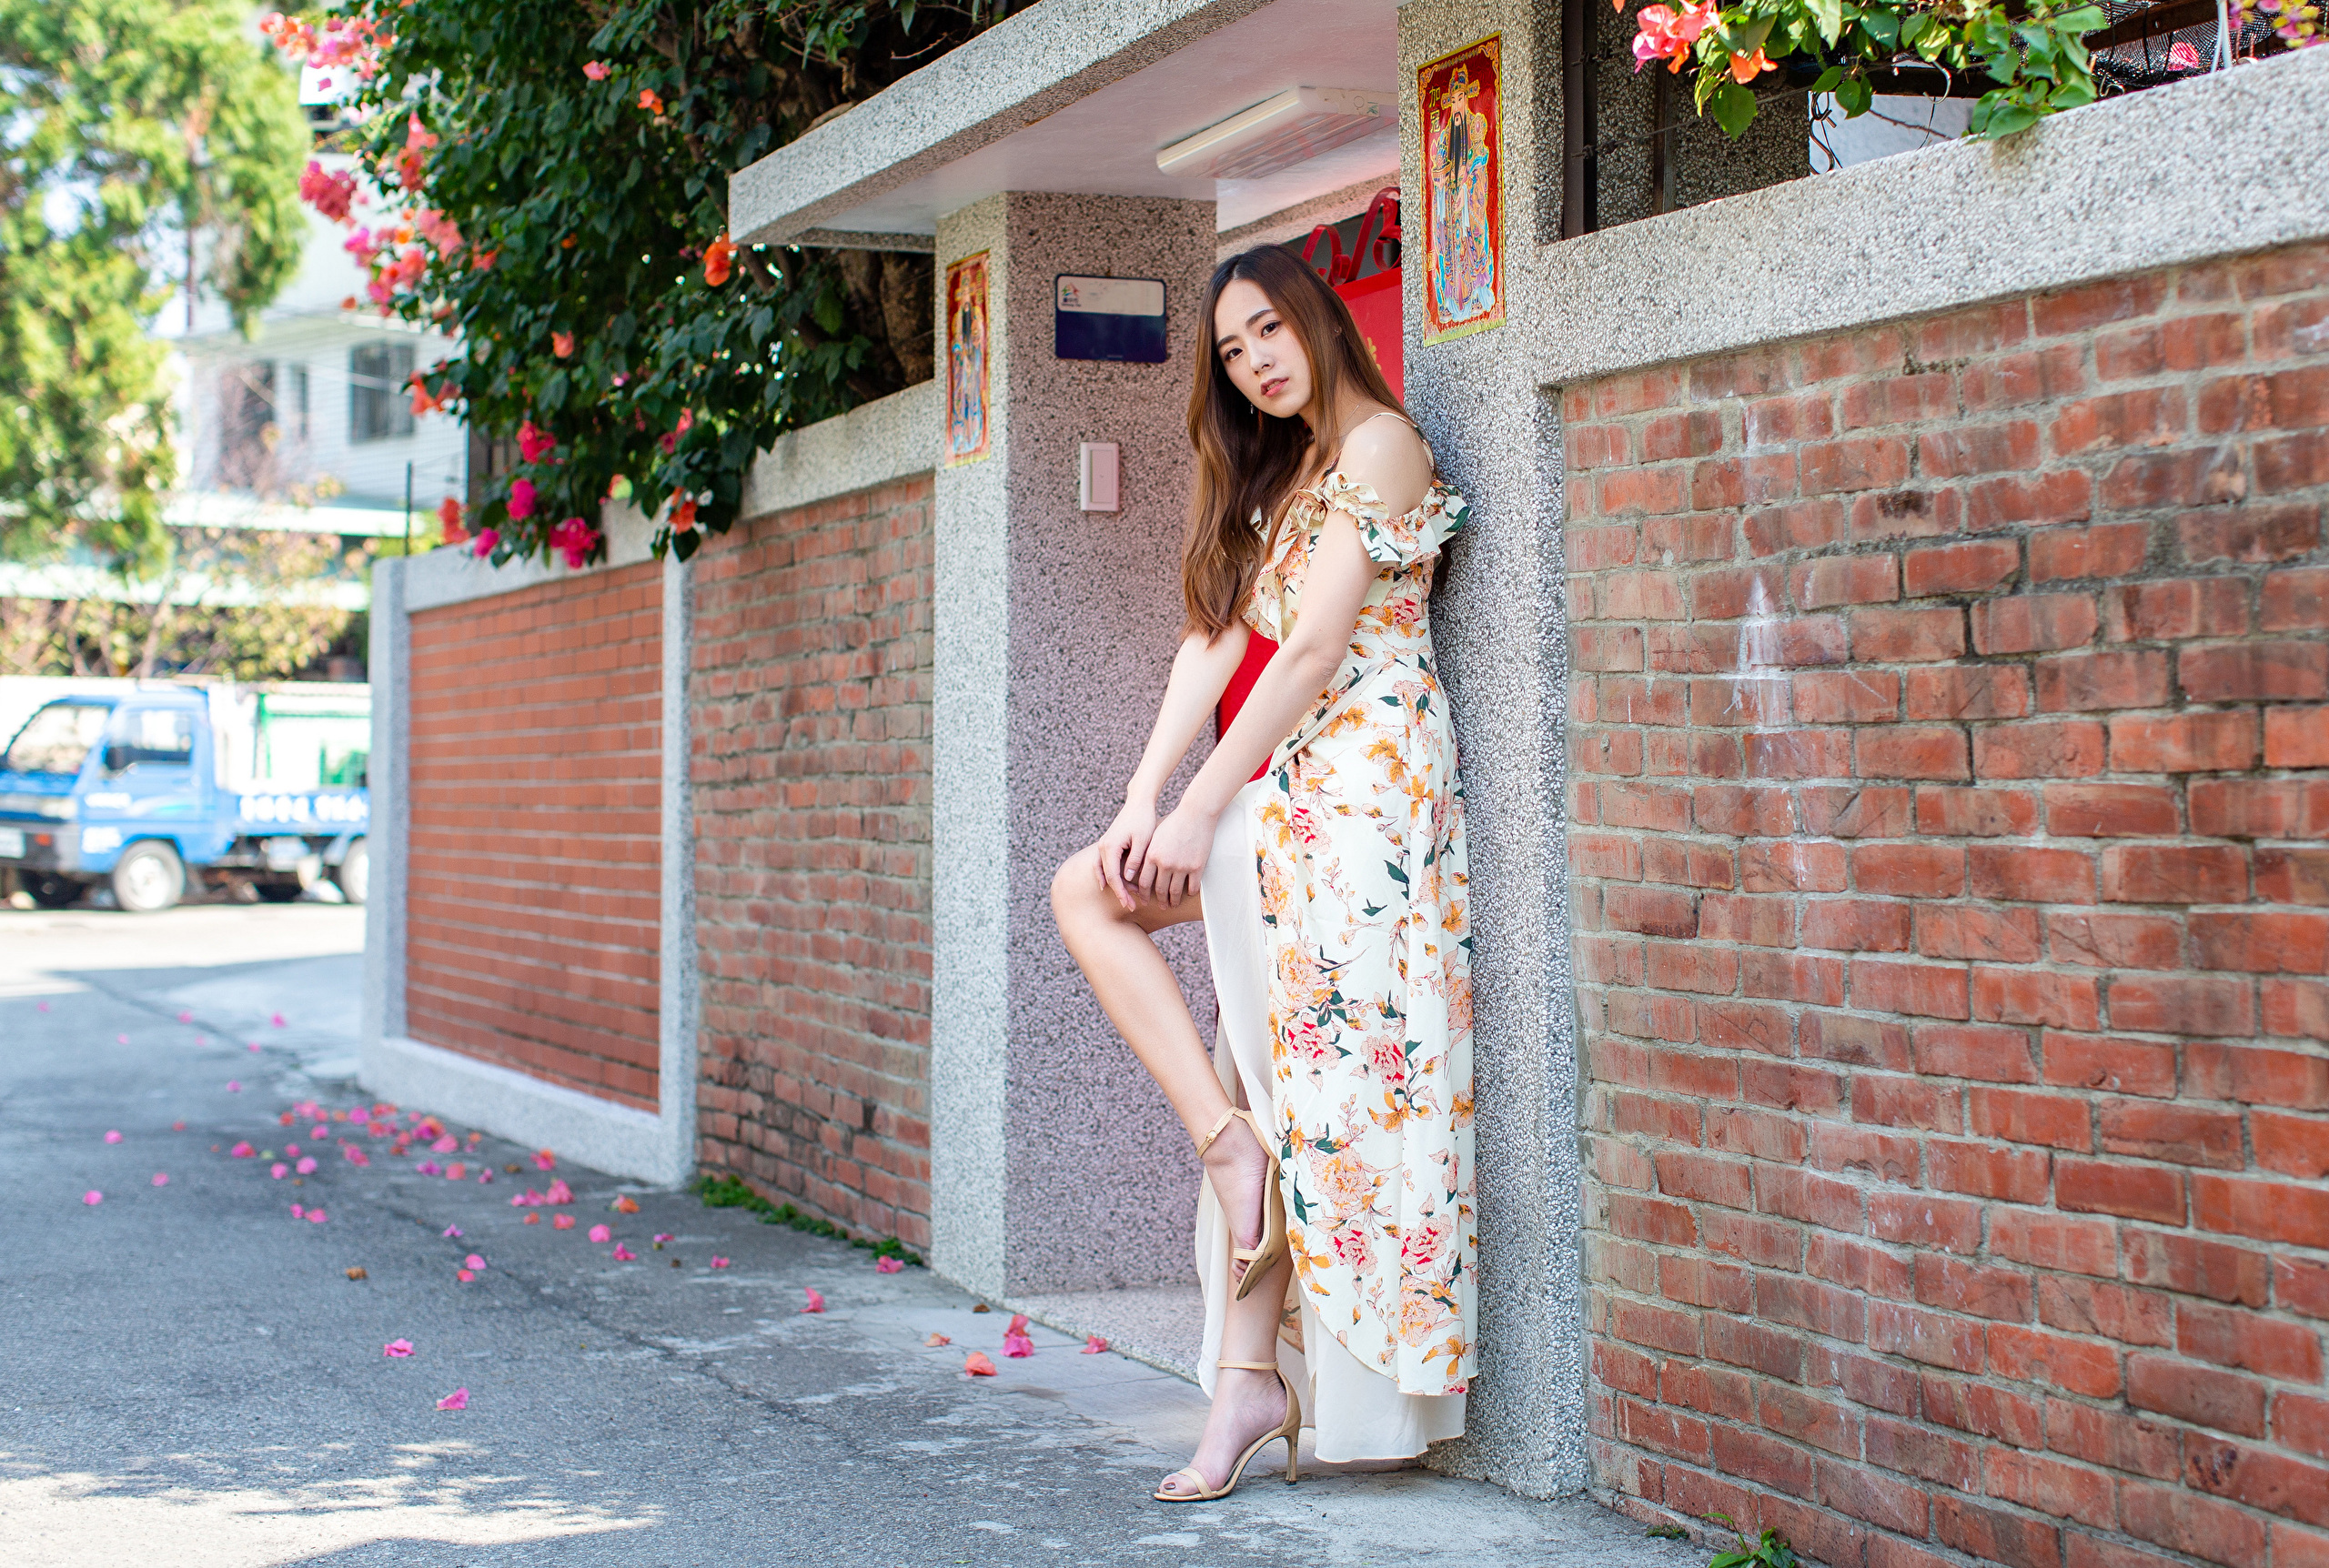 Asian Model Women Long Hair Brunette Wall Bricks Leaning Barefoot Sandal Flower Dress Bushes Flowers 2560x1724